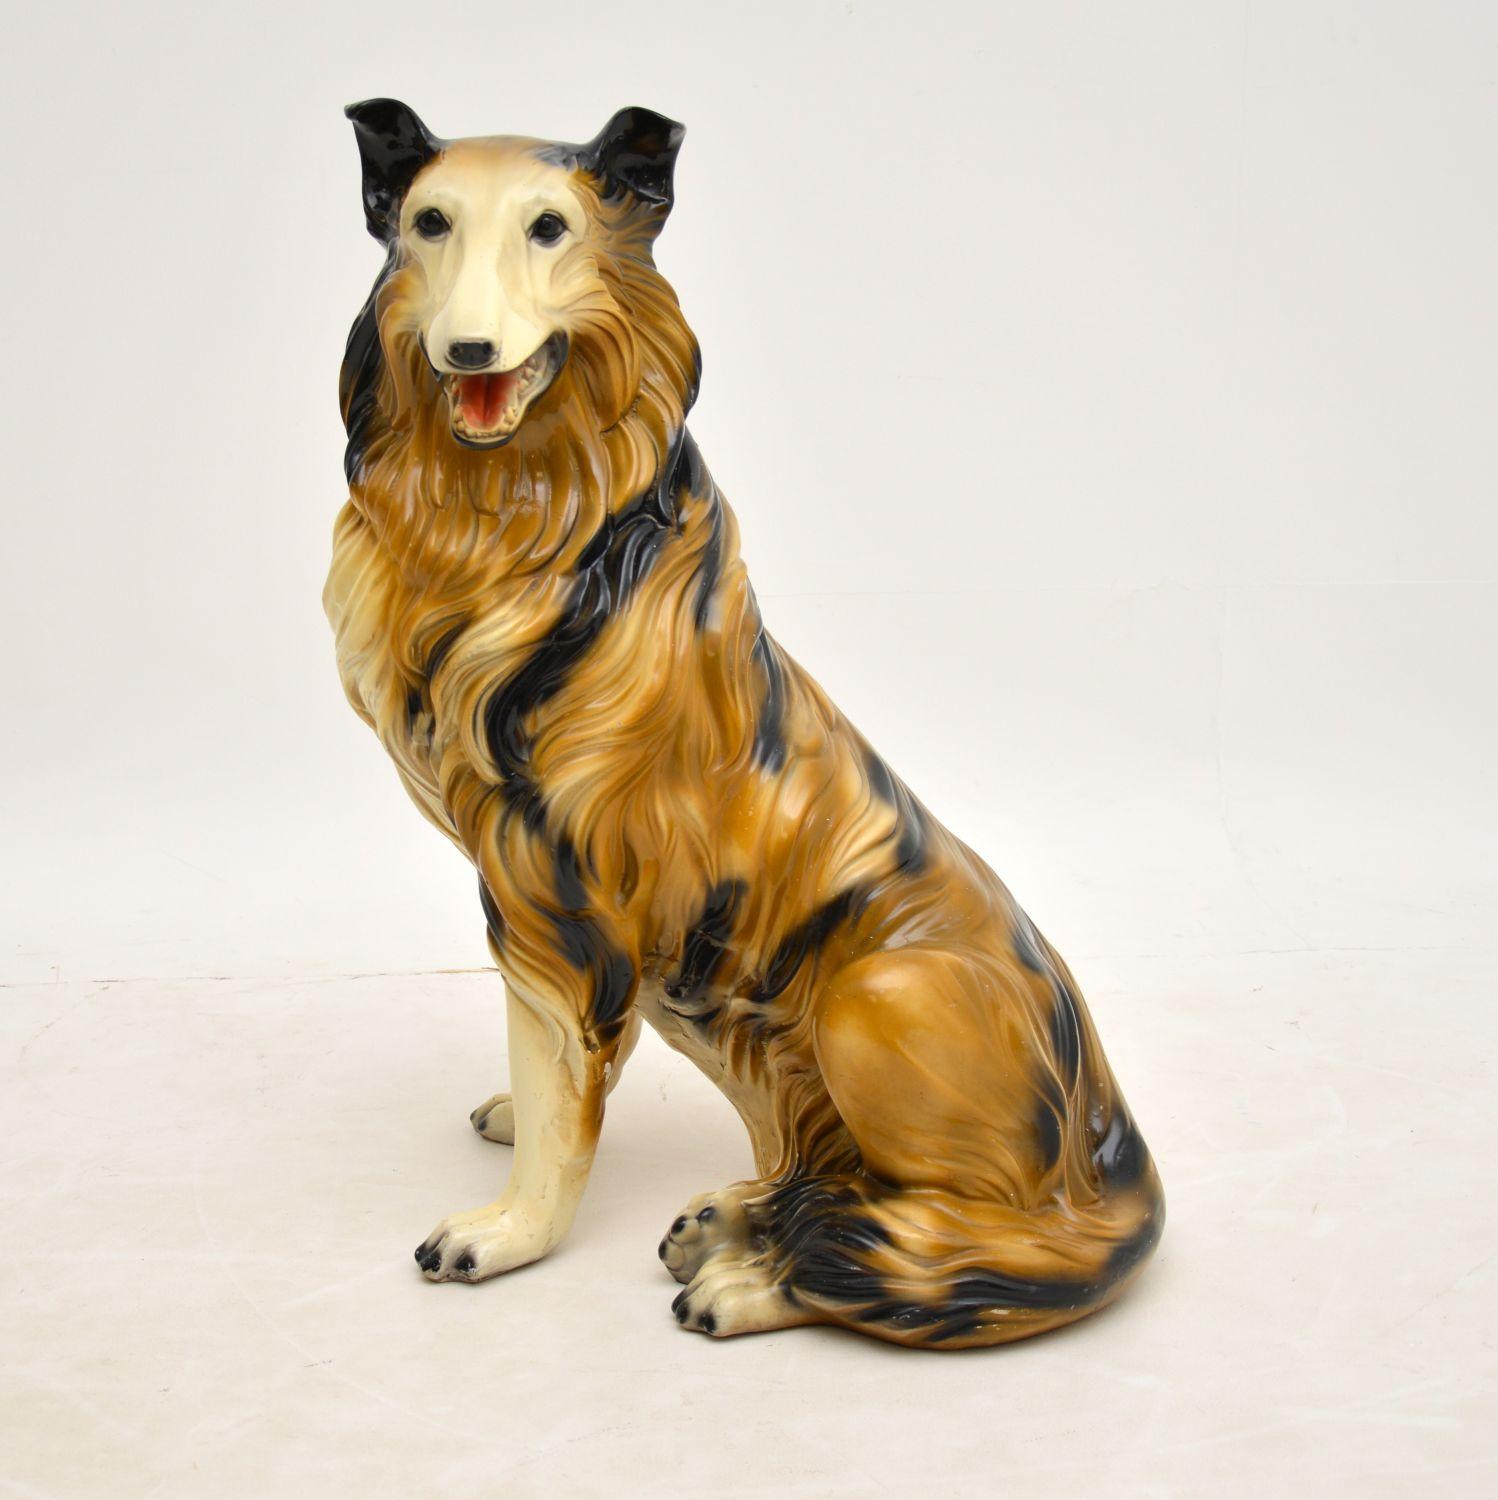 Eine wunderschöne Vintage-Keramik-Statue eines Rough Collie Hundes. Es wurde in England hergestellt und stammt aus den 1960-70er Jahren.
Sie ist handbemalt und von hervorragender Qualität. Sie ist lebensgroß und ein fabelhaftes